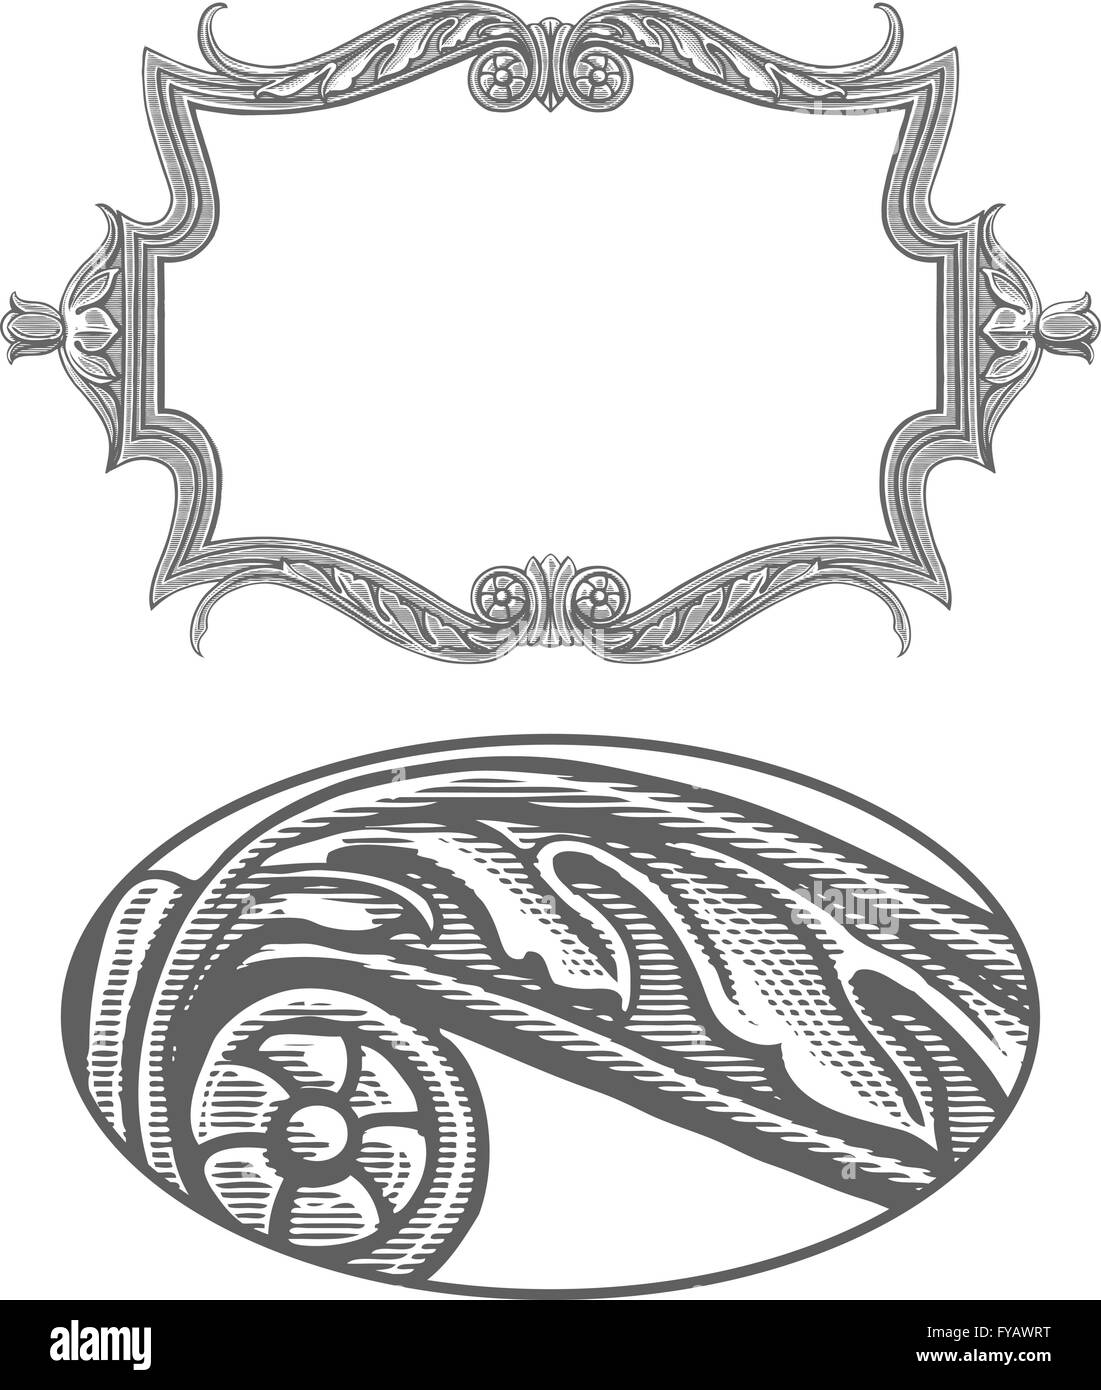 Ornato cornice in vintage stile di incisione Illustrazione Vettoriale